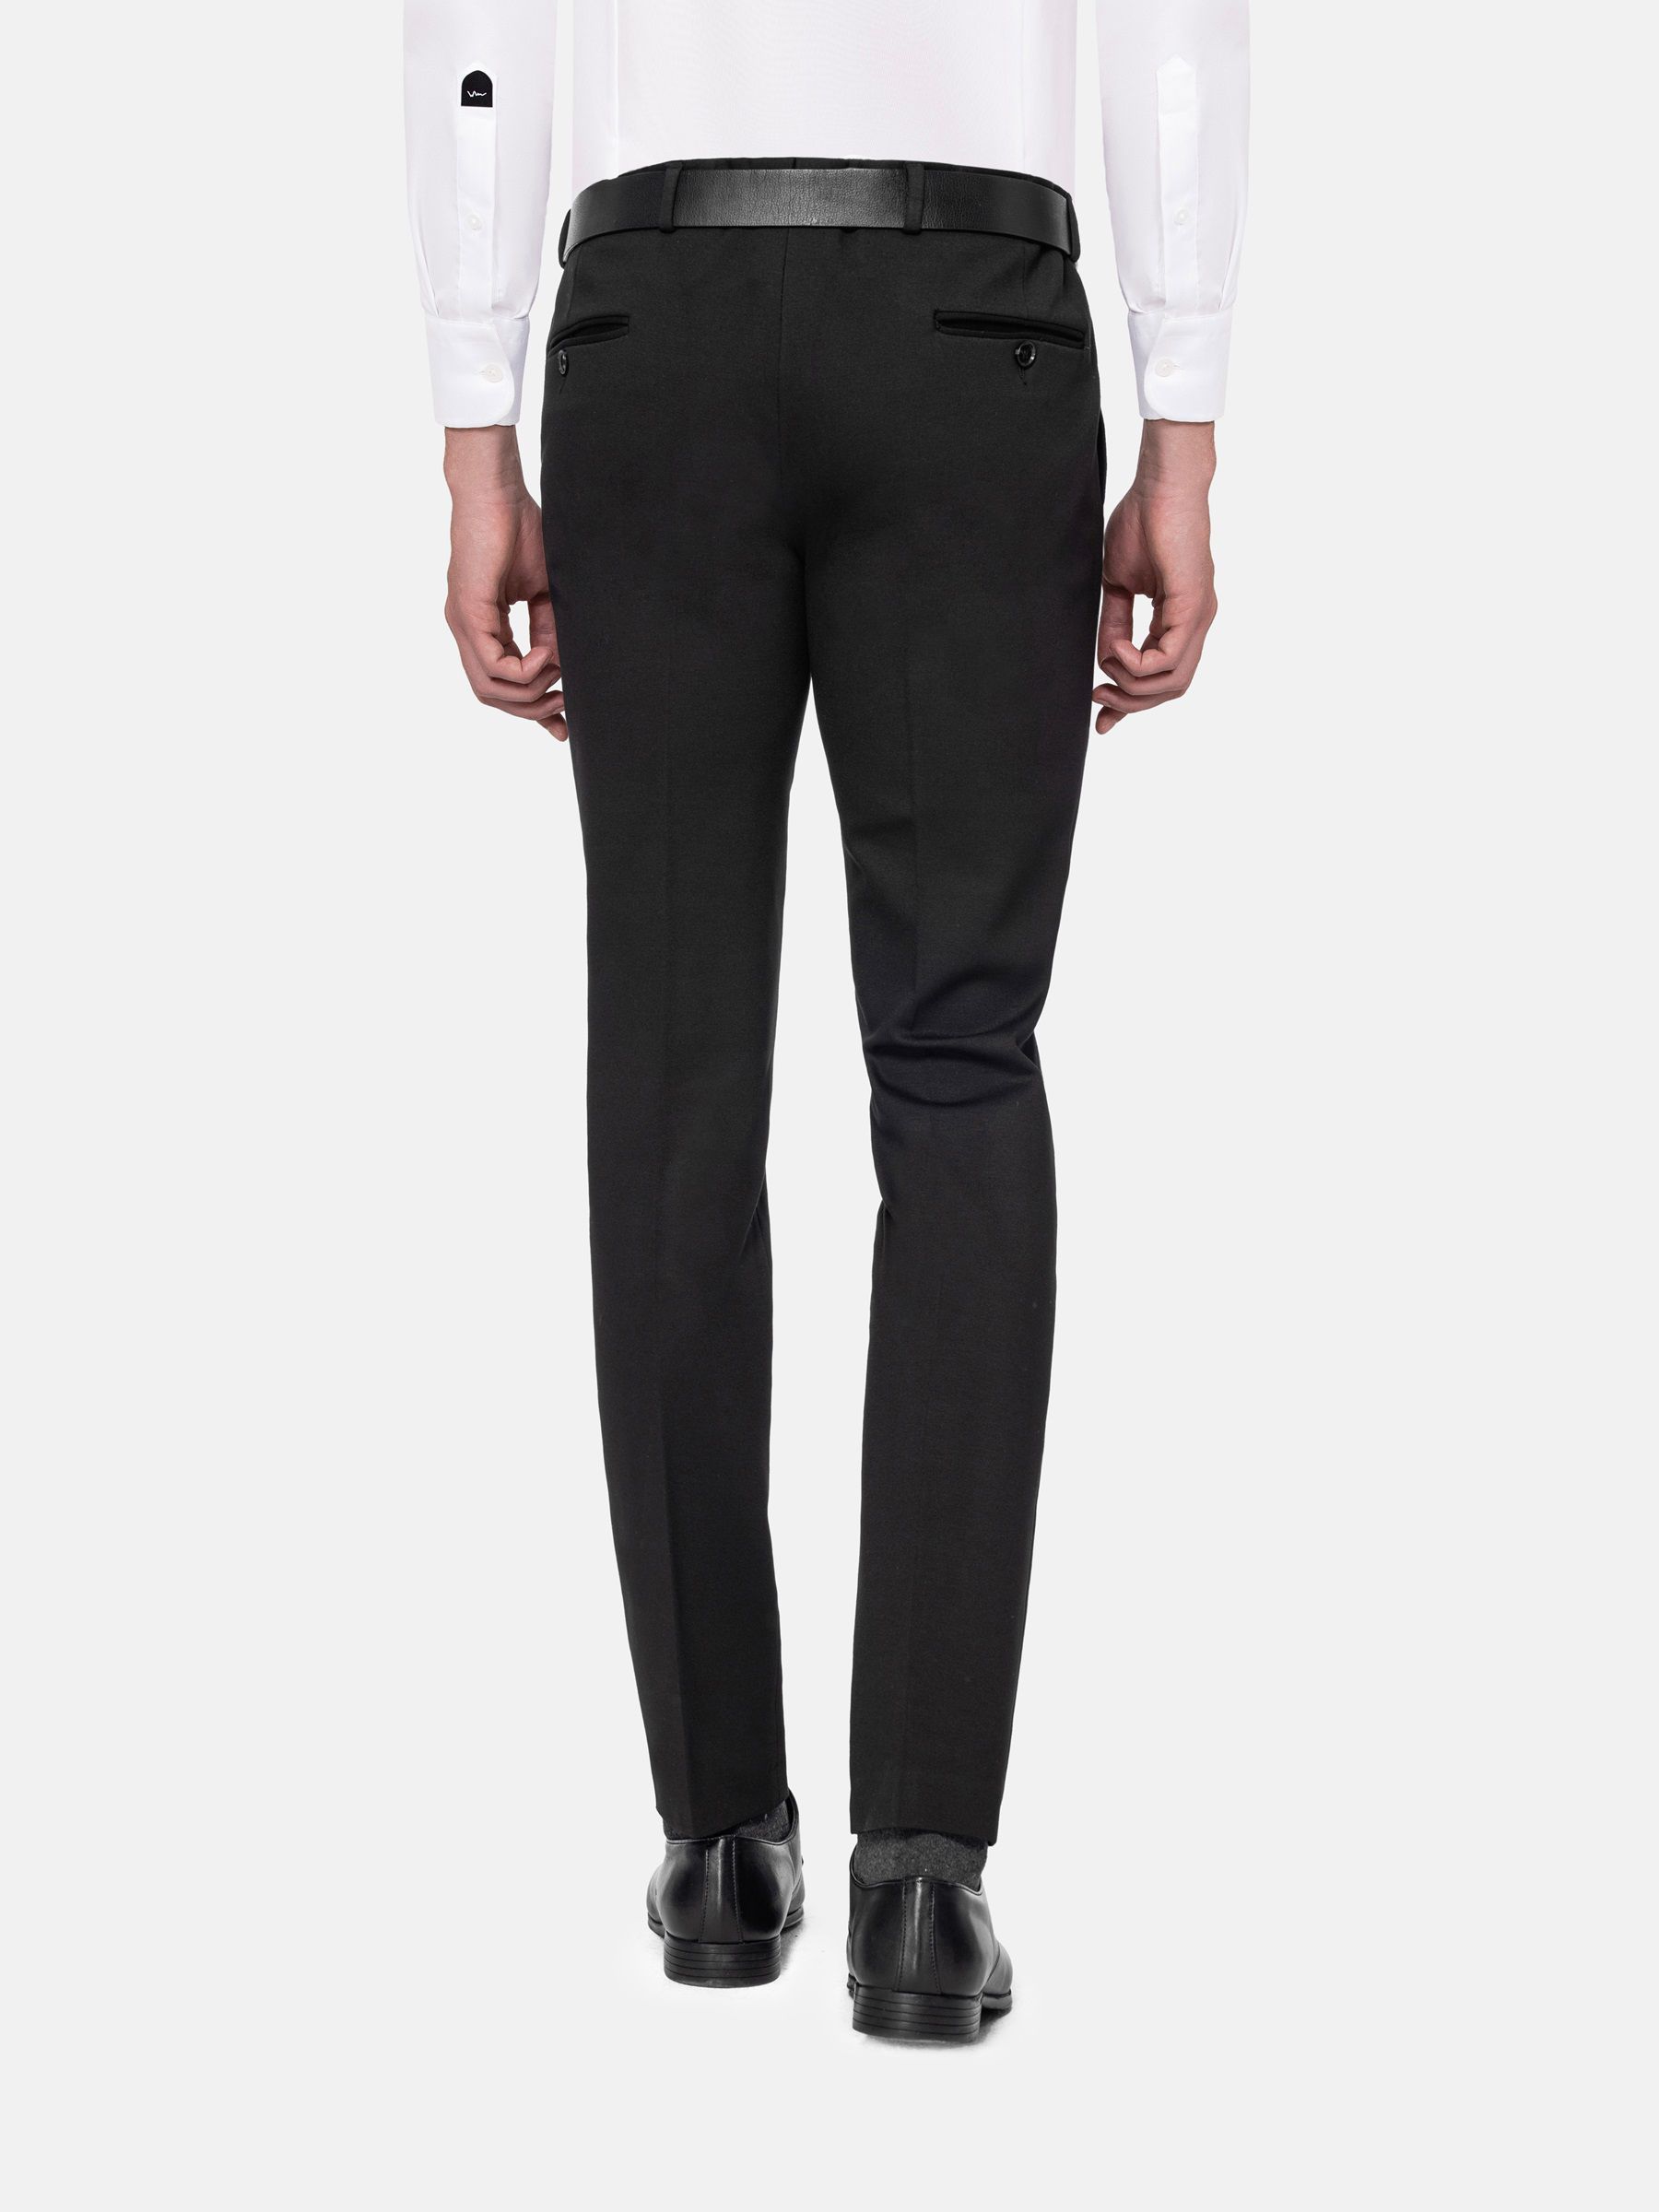 Men's Glen Check Suit Pants - Slim Fit Dark Red Black Pants - Stylish Suit  Trousers